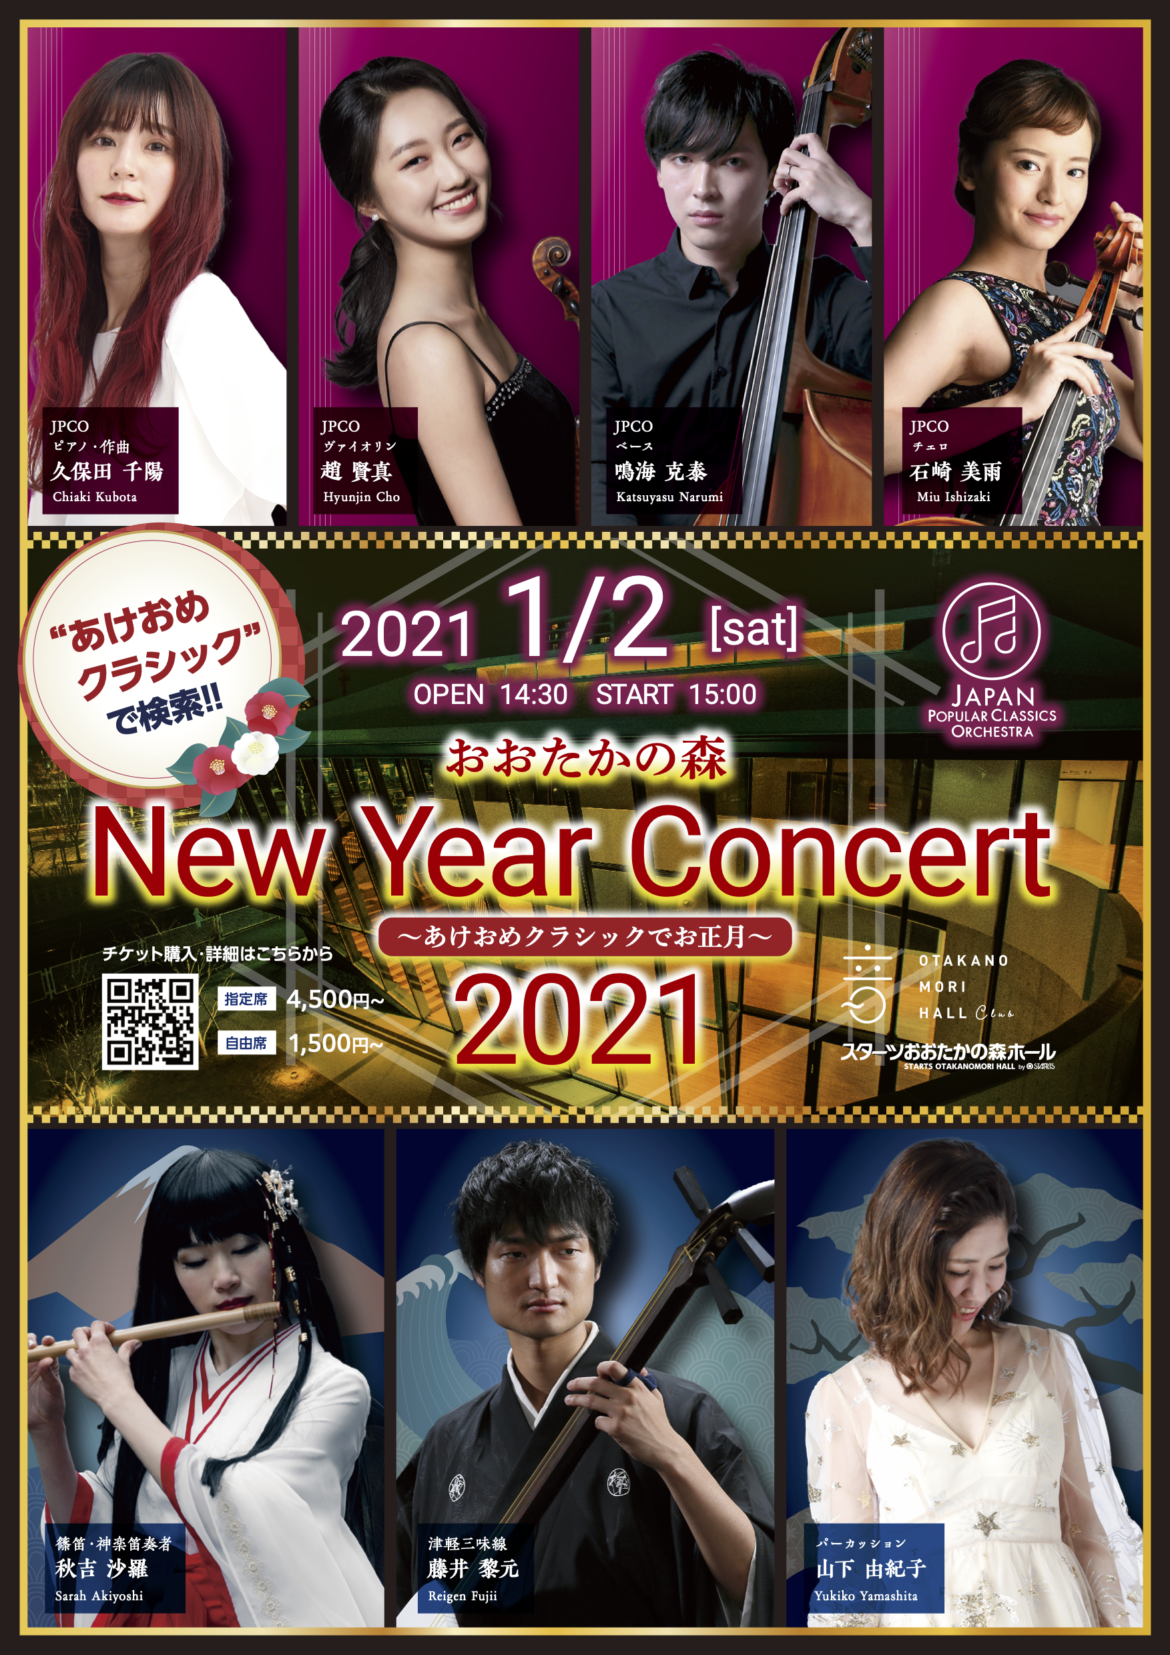 2021.1.2 【JPCO出演】おおたかの森New Year Concert  2021  〜あけおめクラシックでお正月〜